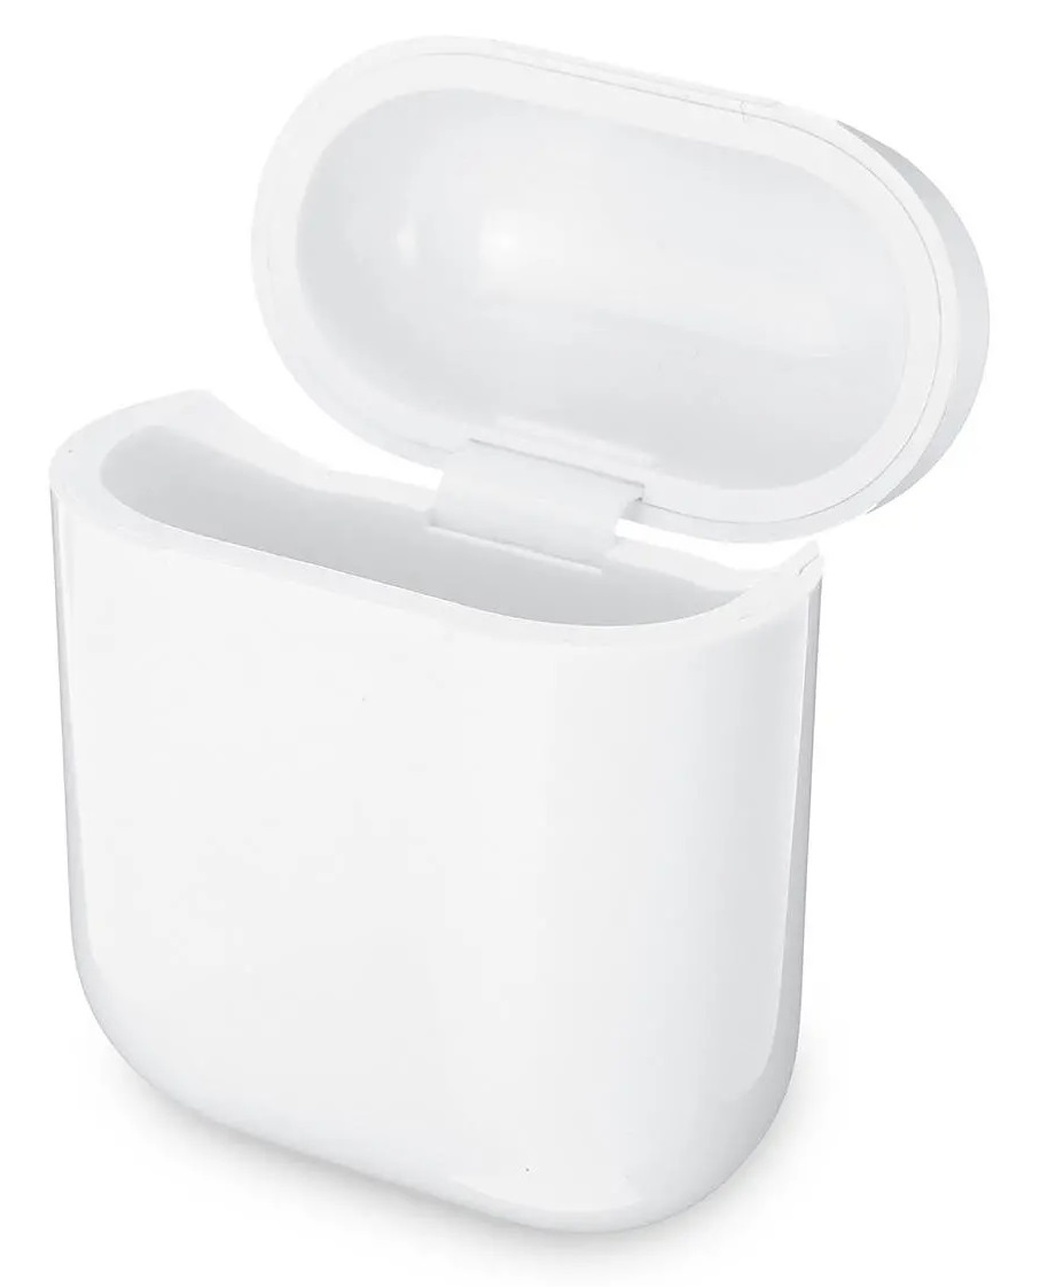 Портативный компактный мини-чехол для наушников Apple Airpods фото